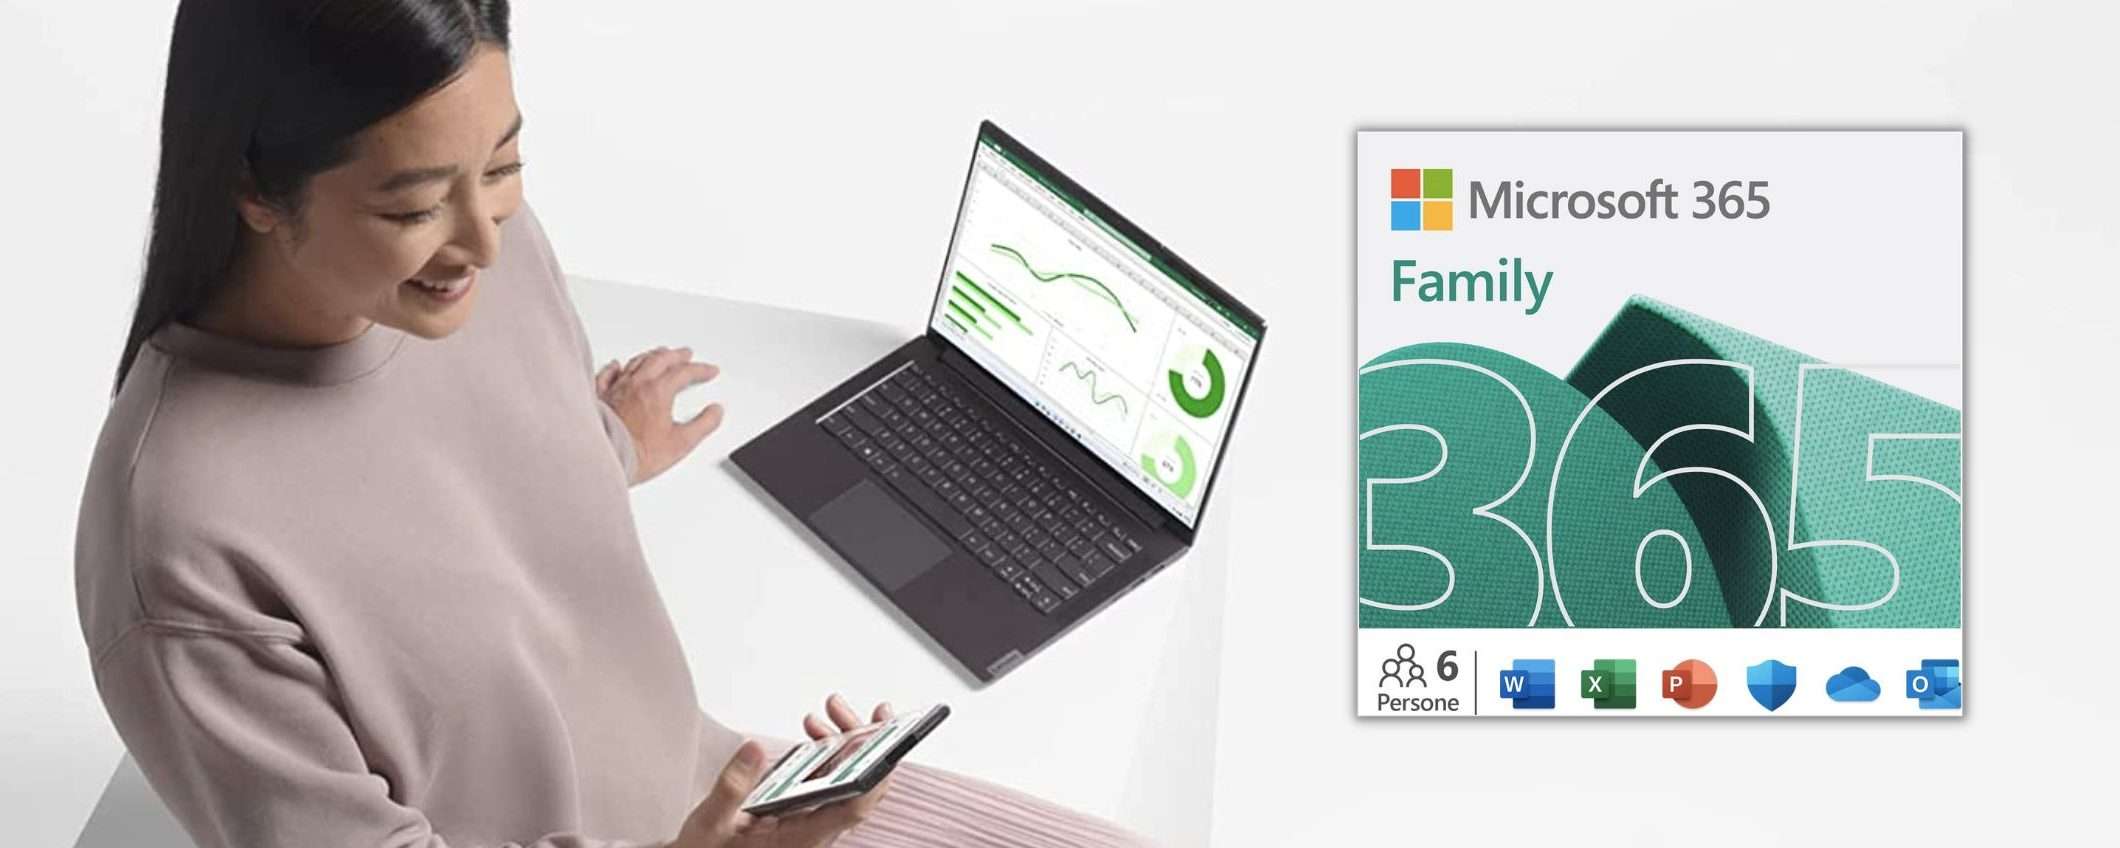 Microsoft 365 Family: 6 licenze a prezzo speciale, l'offerta Amazon